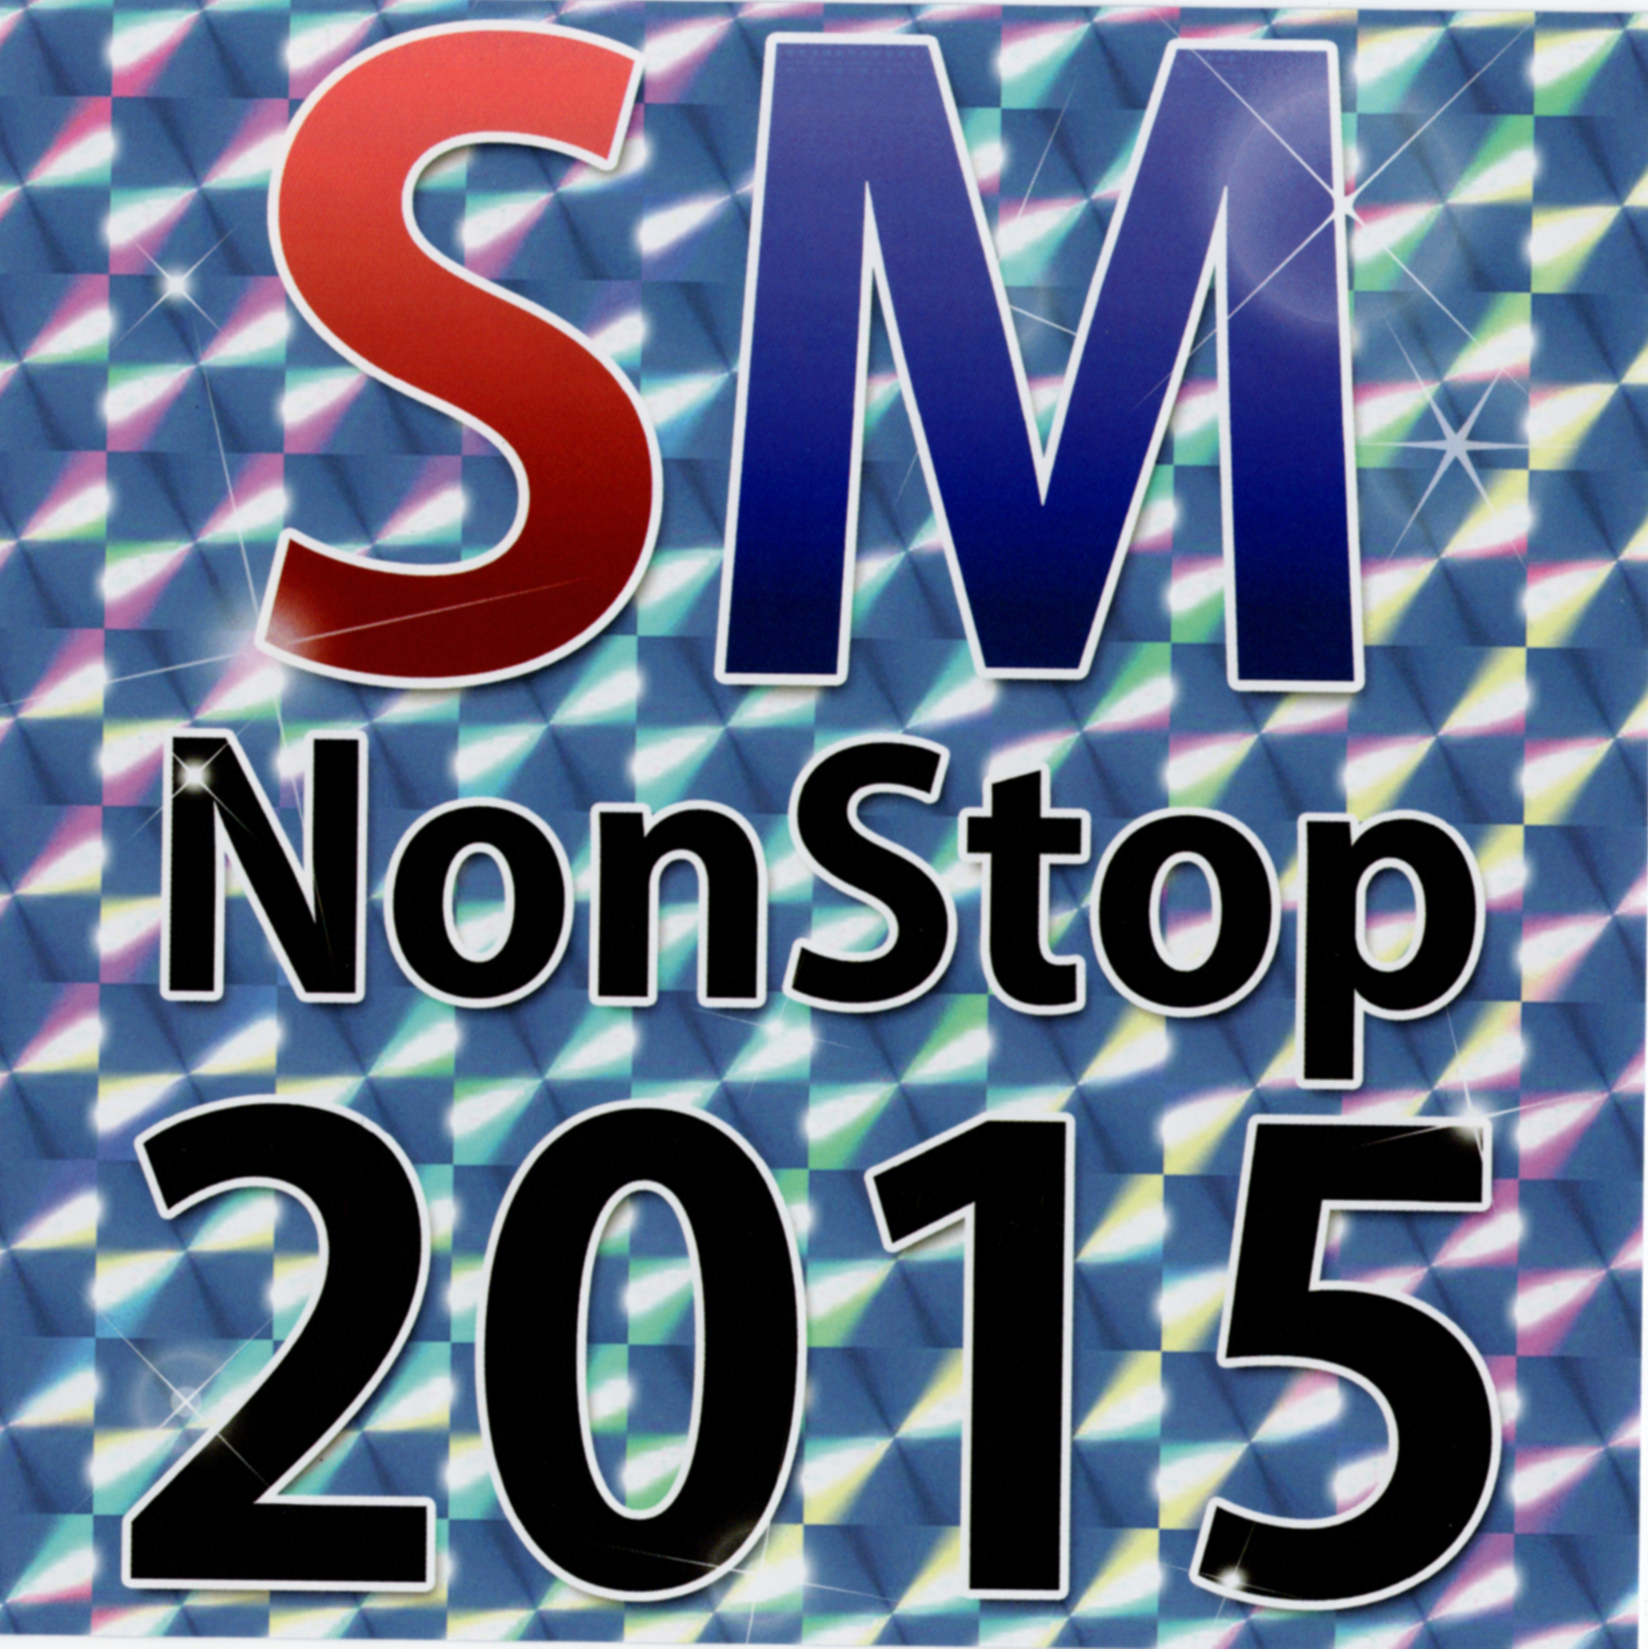 SM NonStop 2015